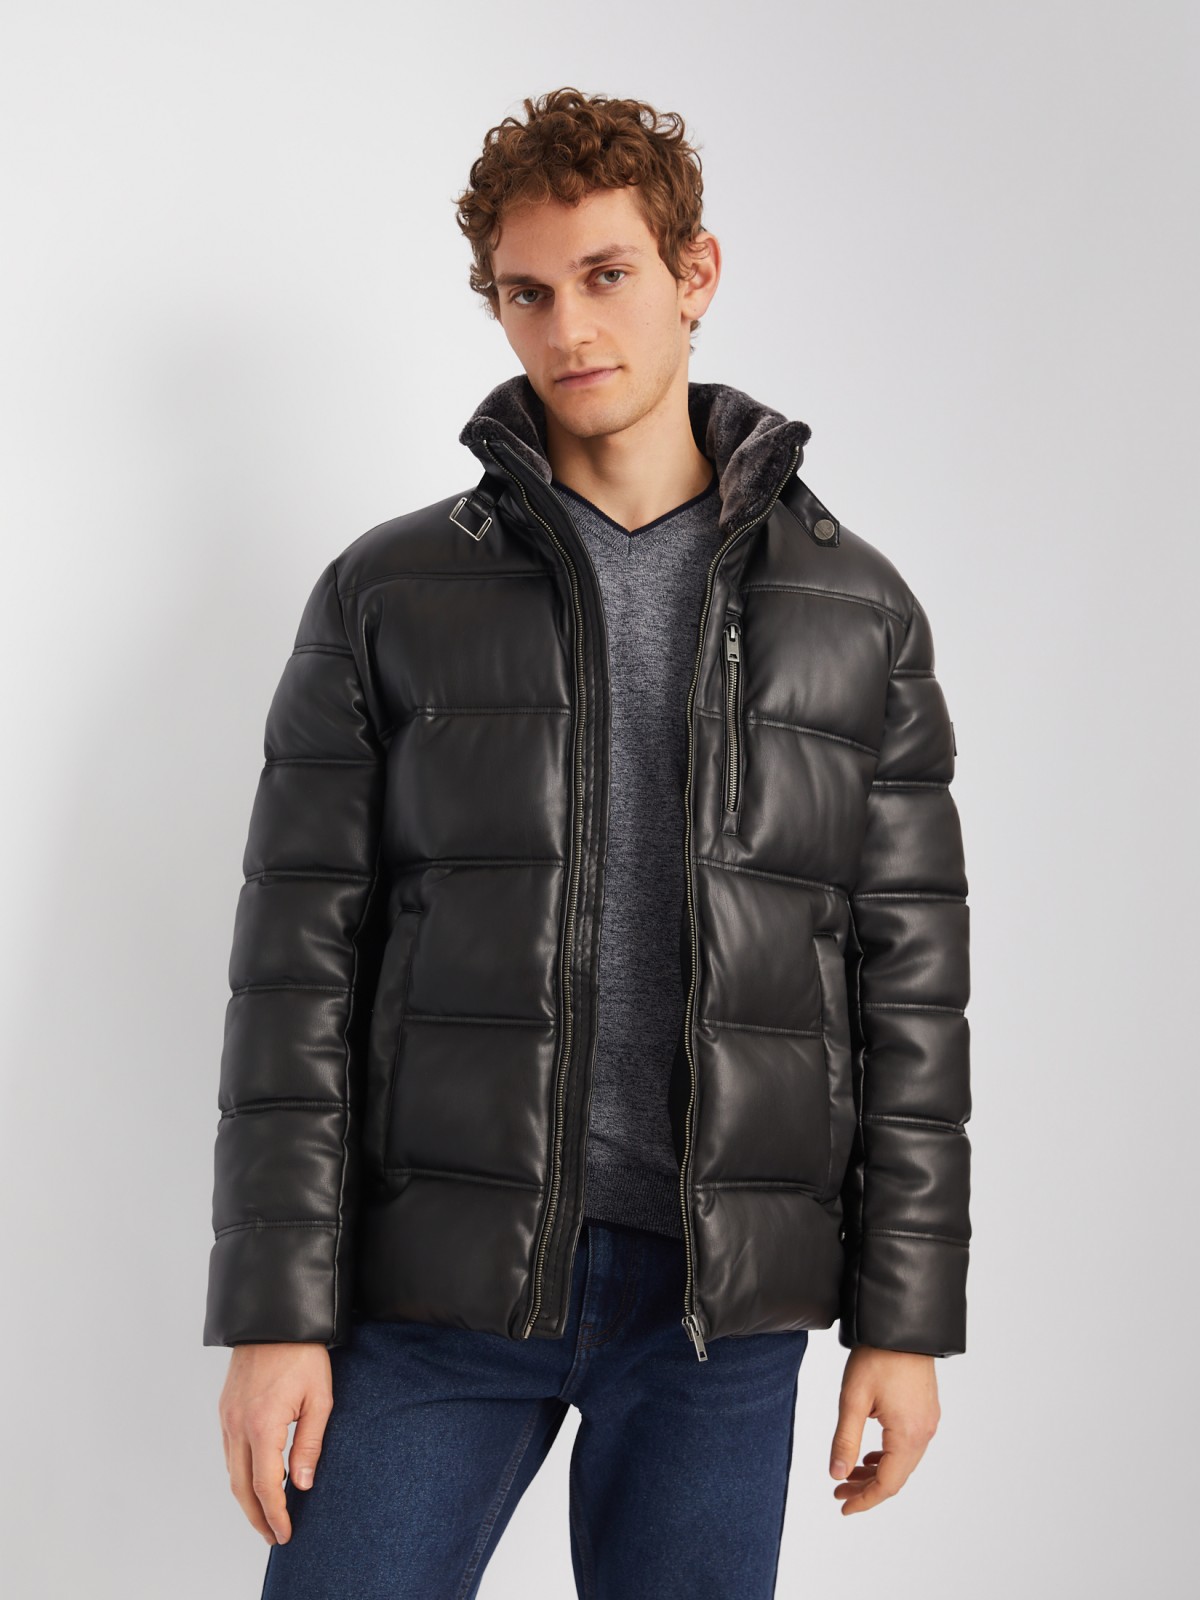 Тёплая куртка из экокожи с воротником-стойкой zolla 013425102014, цвет черный, размер M